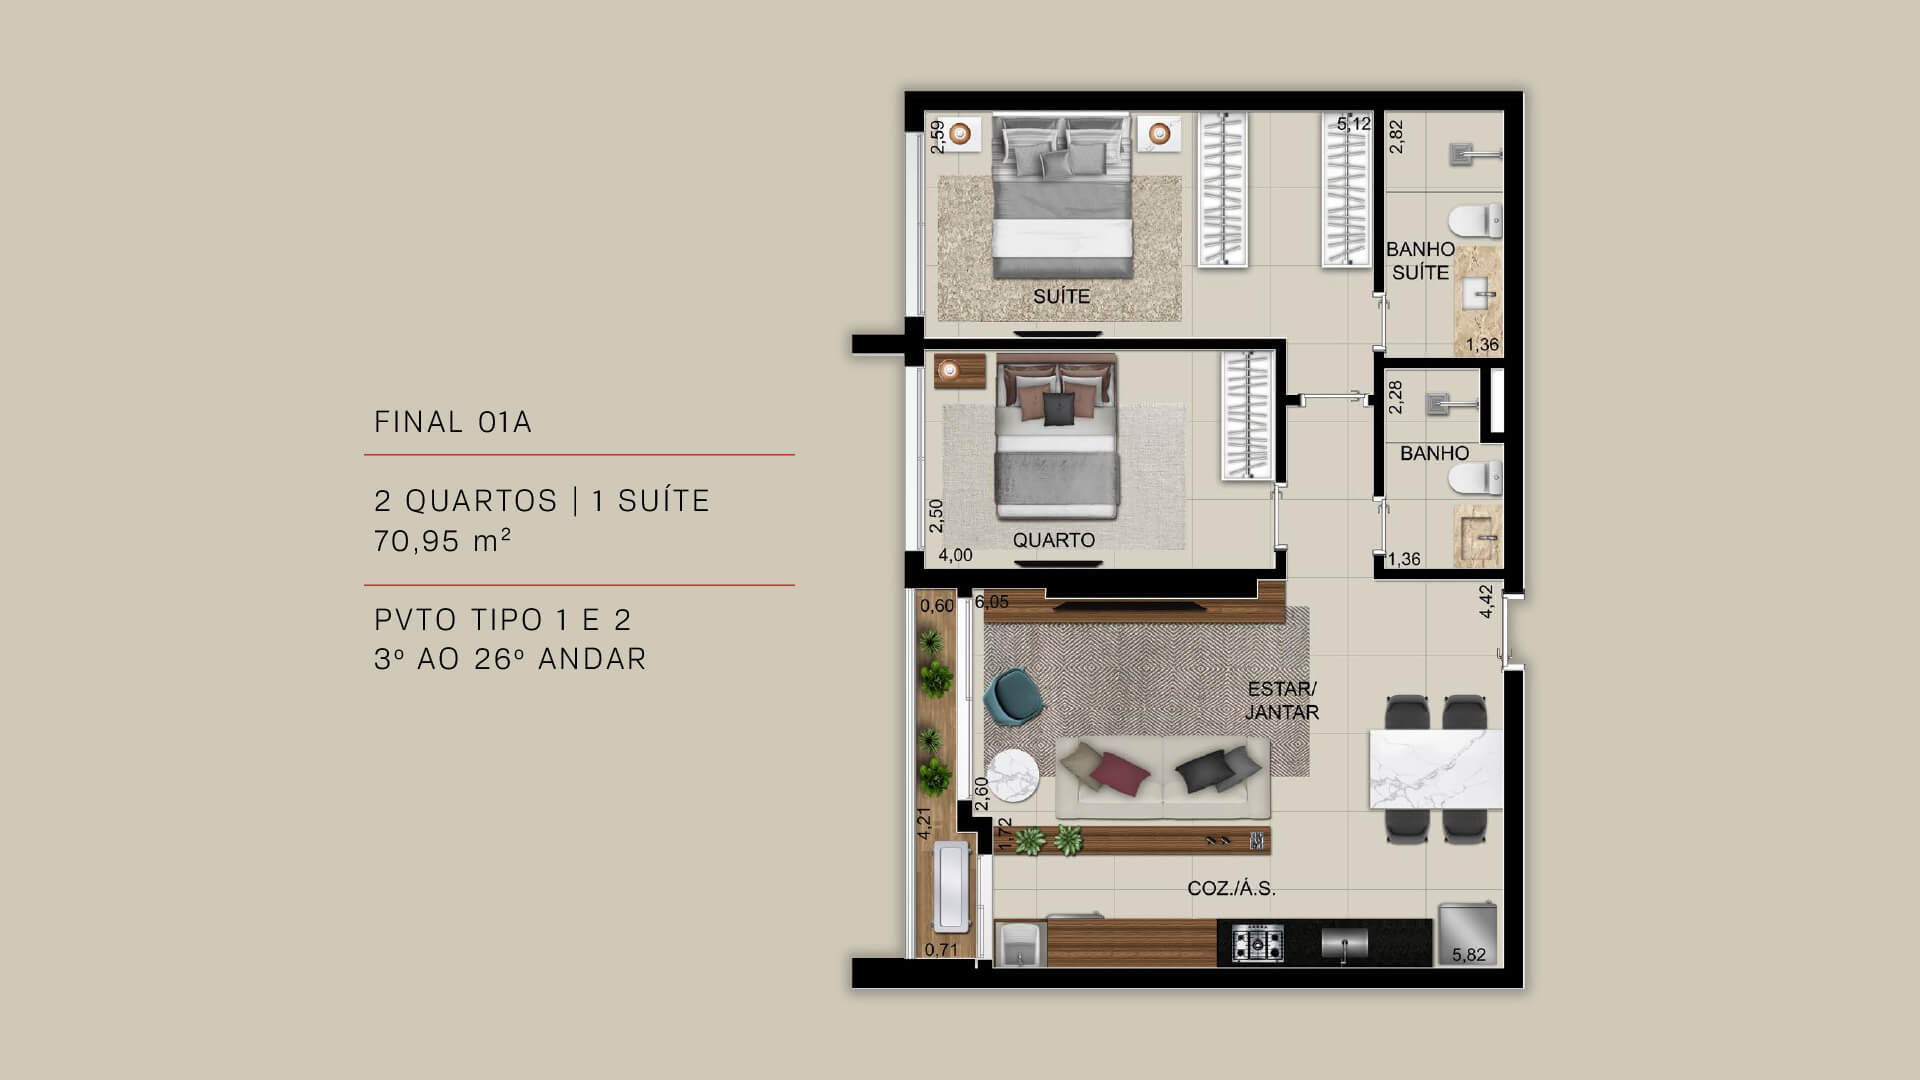 FINAL 01A - 2 QUARTOS | 1 SUÍTE 70,95 m²